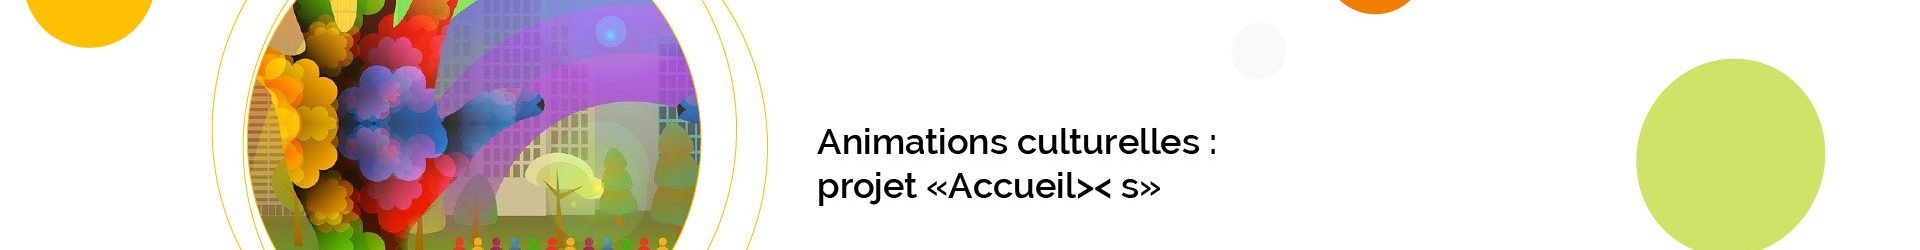 Accueil >< s : animations culturelles et collectives